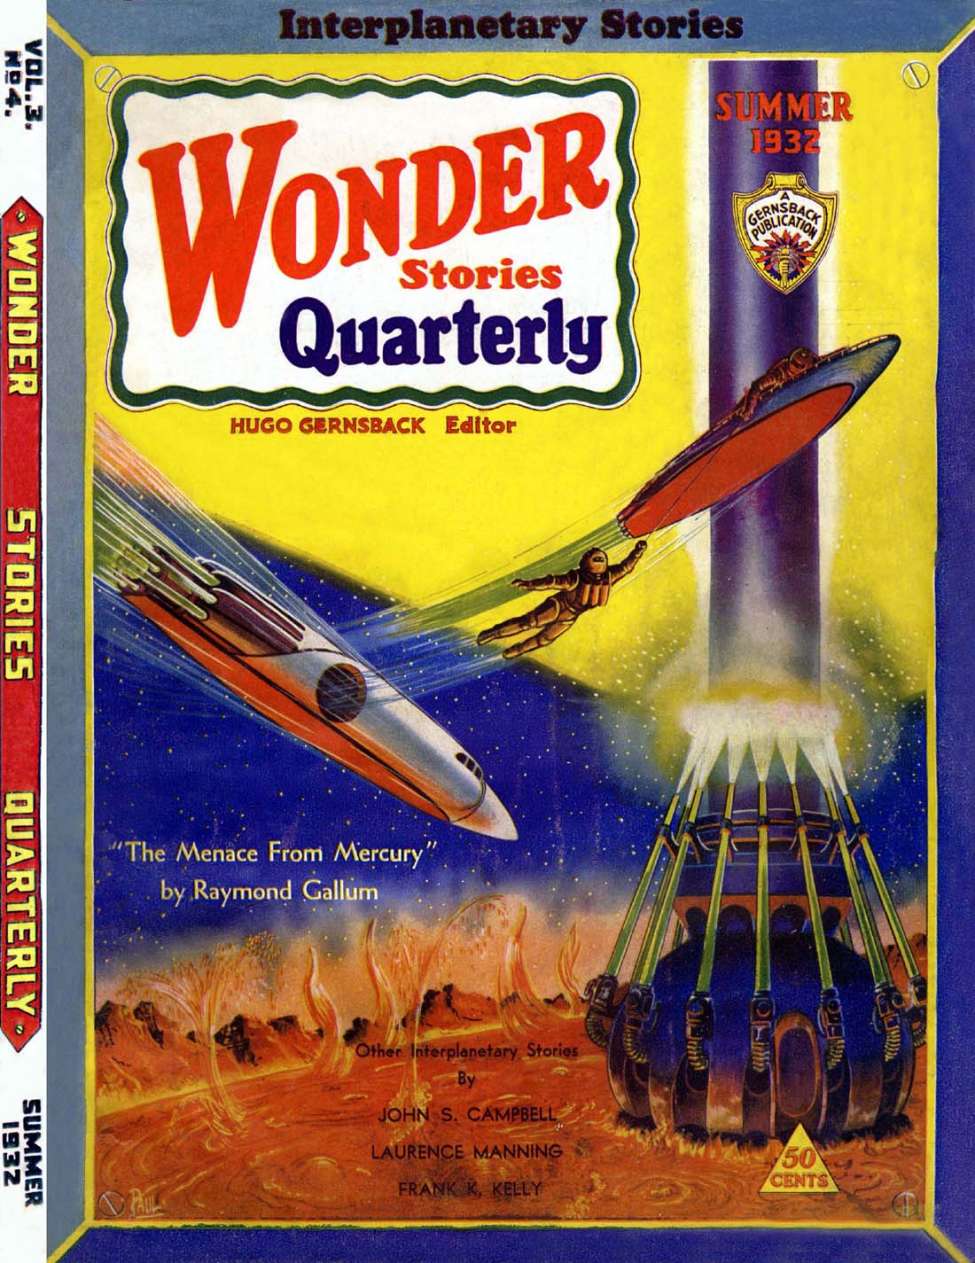 Book Cover For Wonder Stories Quarterly v3 4 - Beyond Pluto - John Scott Campbell